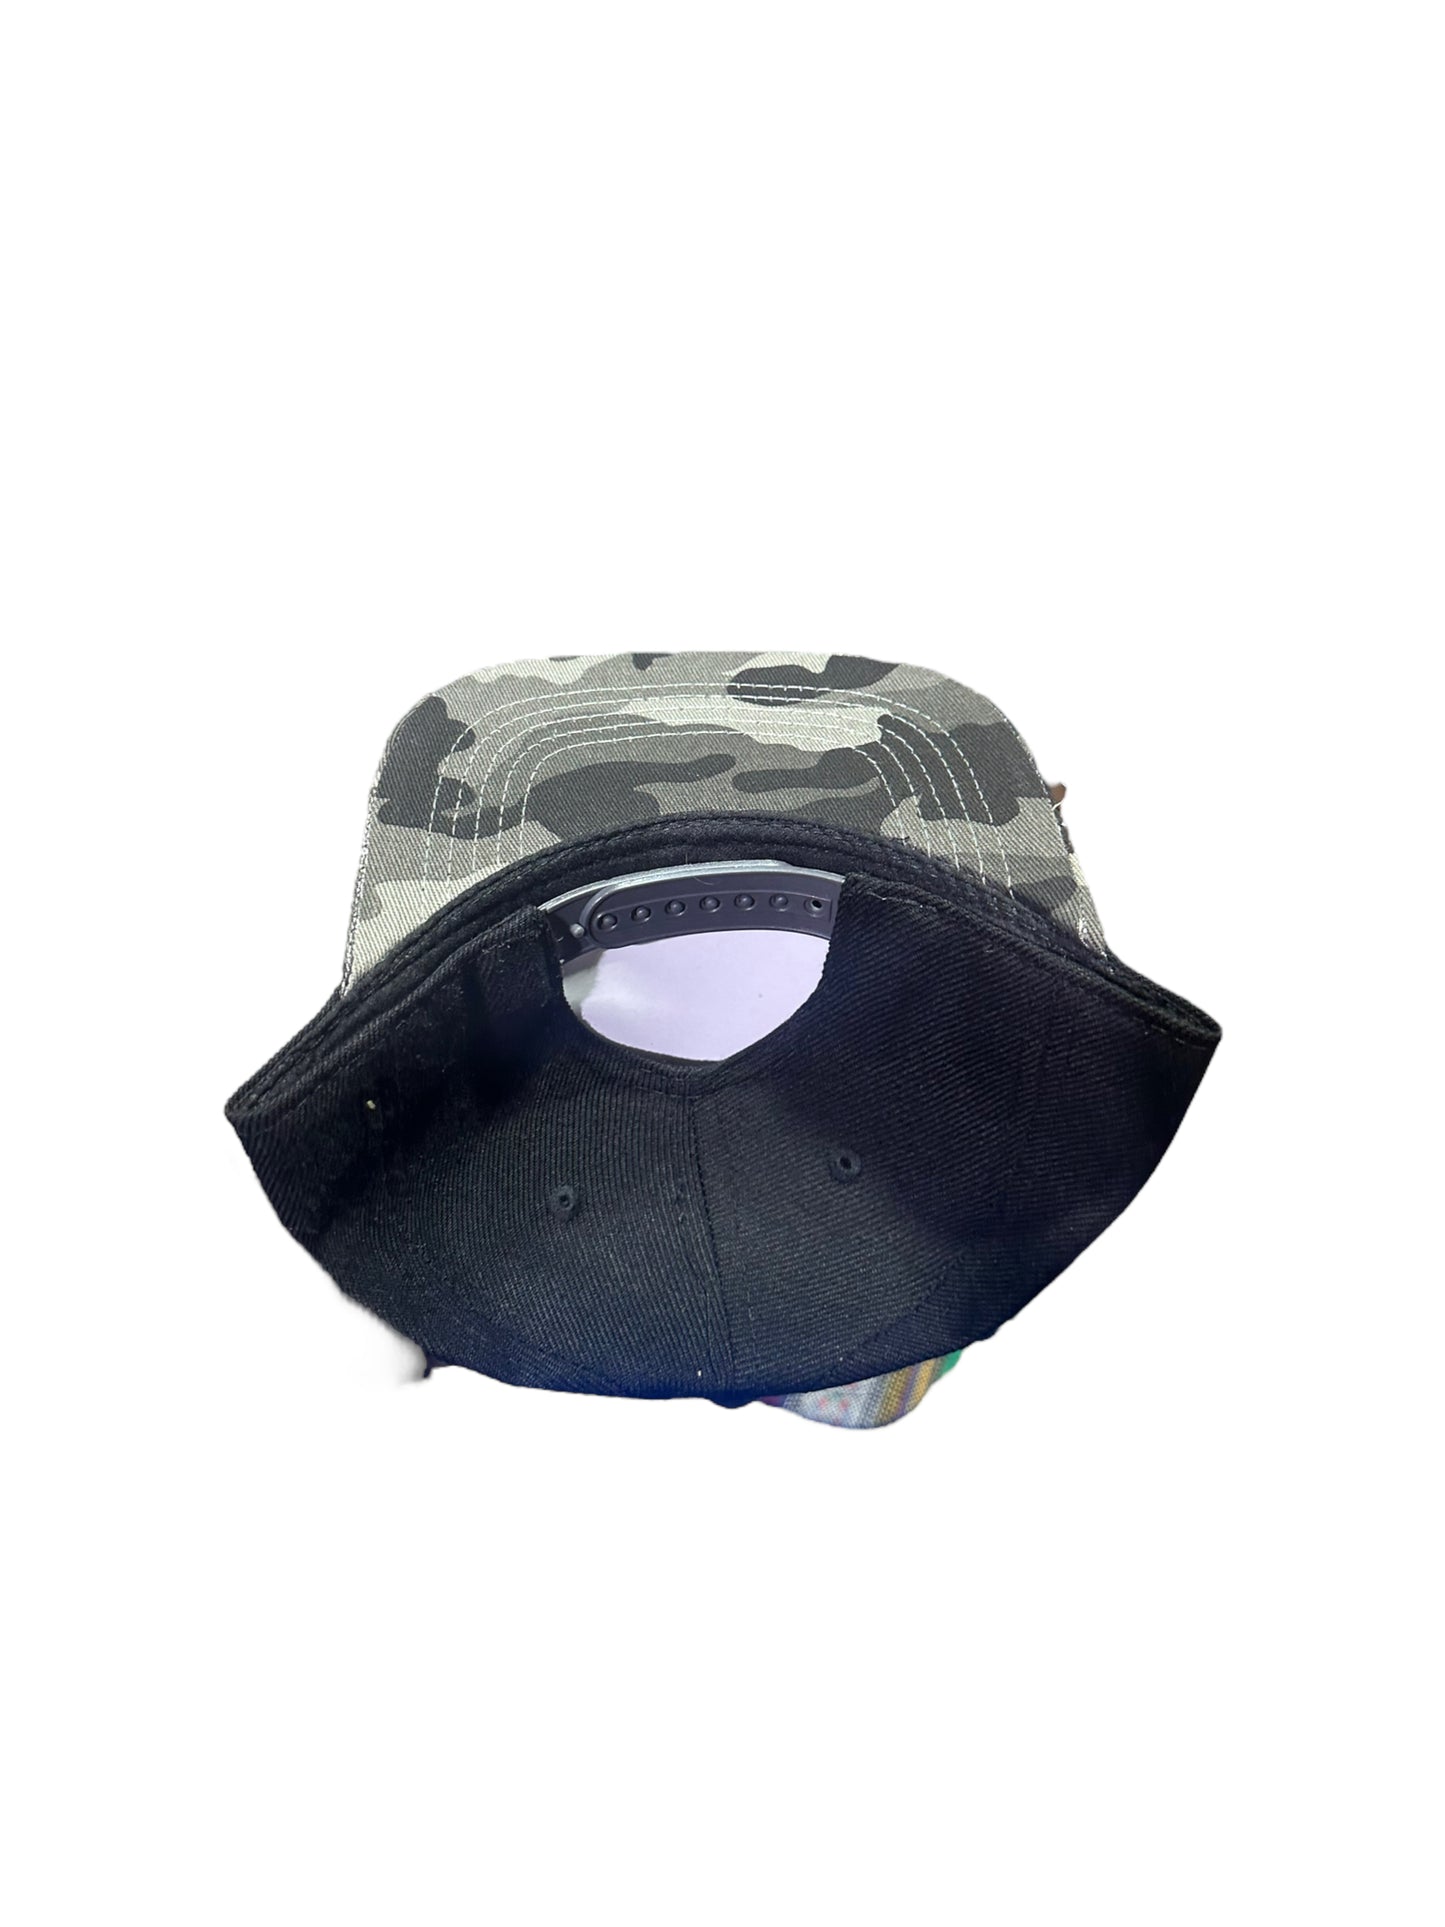 Baby hats-Grey camo bill & black crown SnapBack